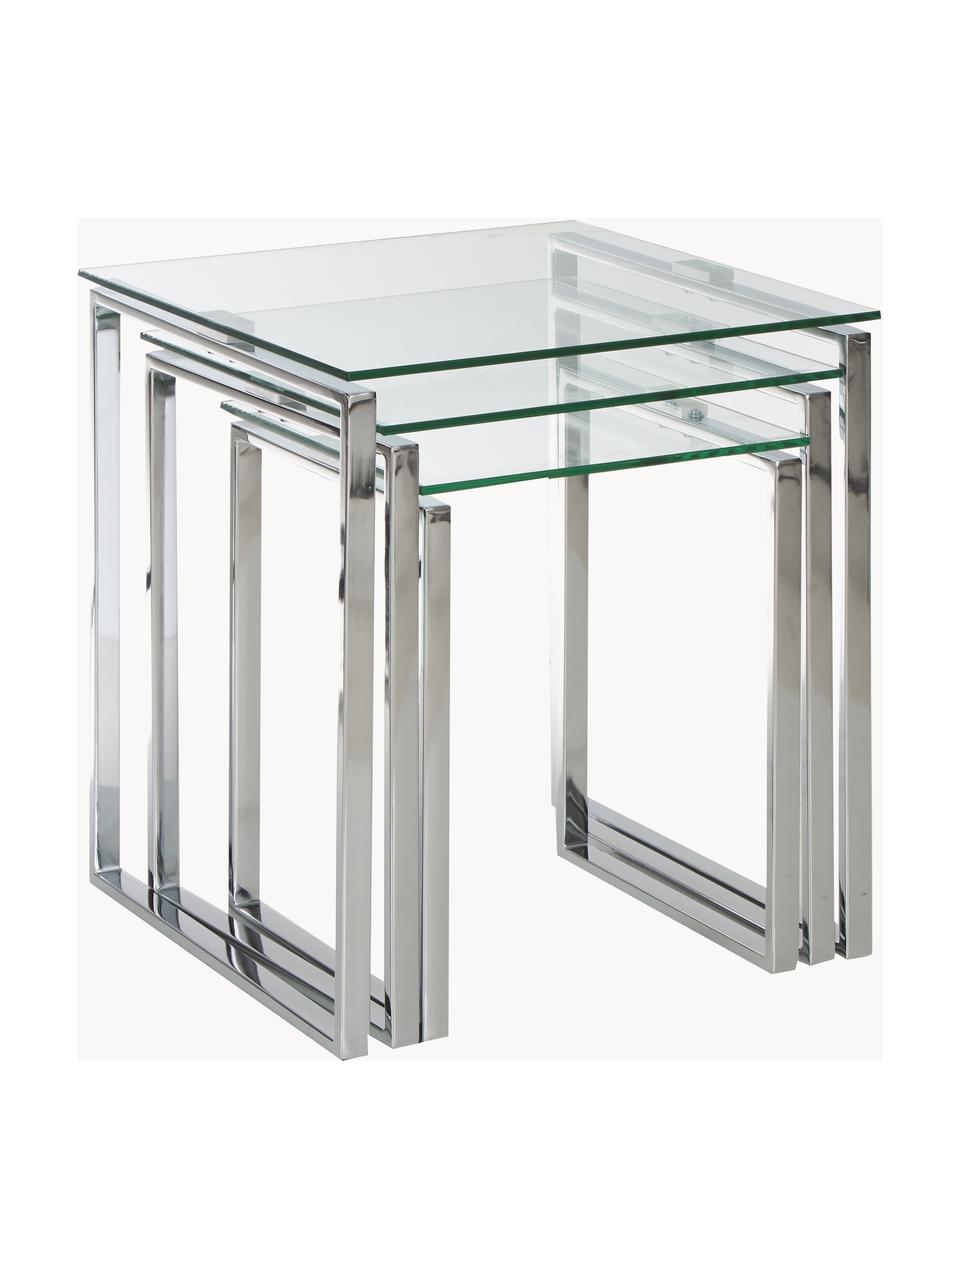 Beistelltisch Katrine mit Glasplatte, 3er-Set, Gestell: Stahl, verchromt, Tischplatte: Sicherheitsglas, Chromfarben, Transparent, Set mit verschiedenen Größen